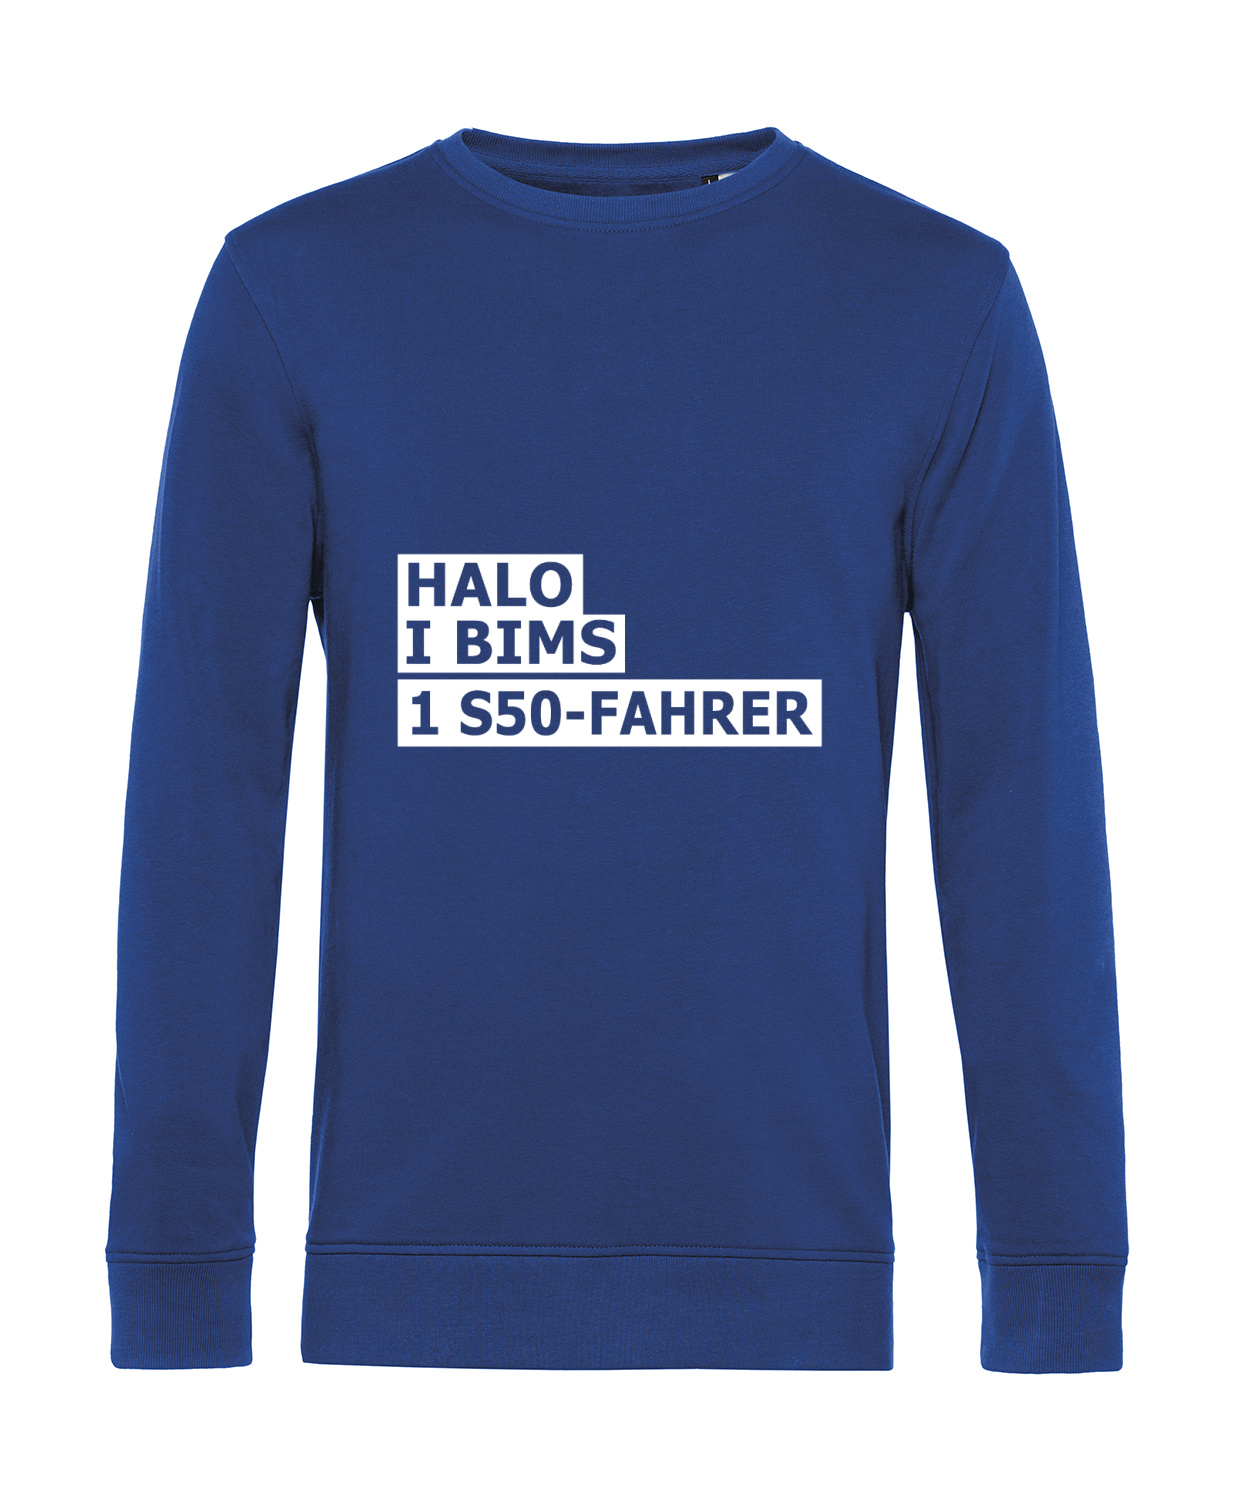 Nachhaltiges Sweatshirt Herren 2Takter - Halo I bims 1 S50-Fahrer